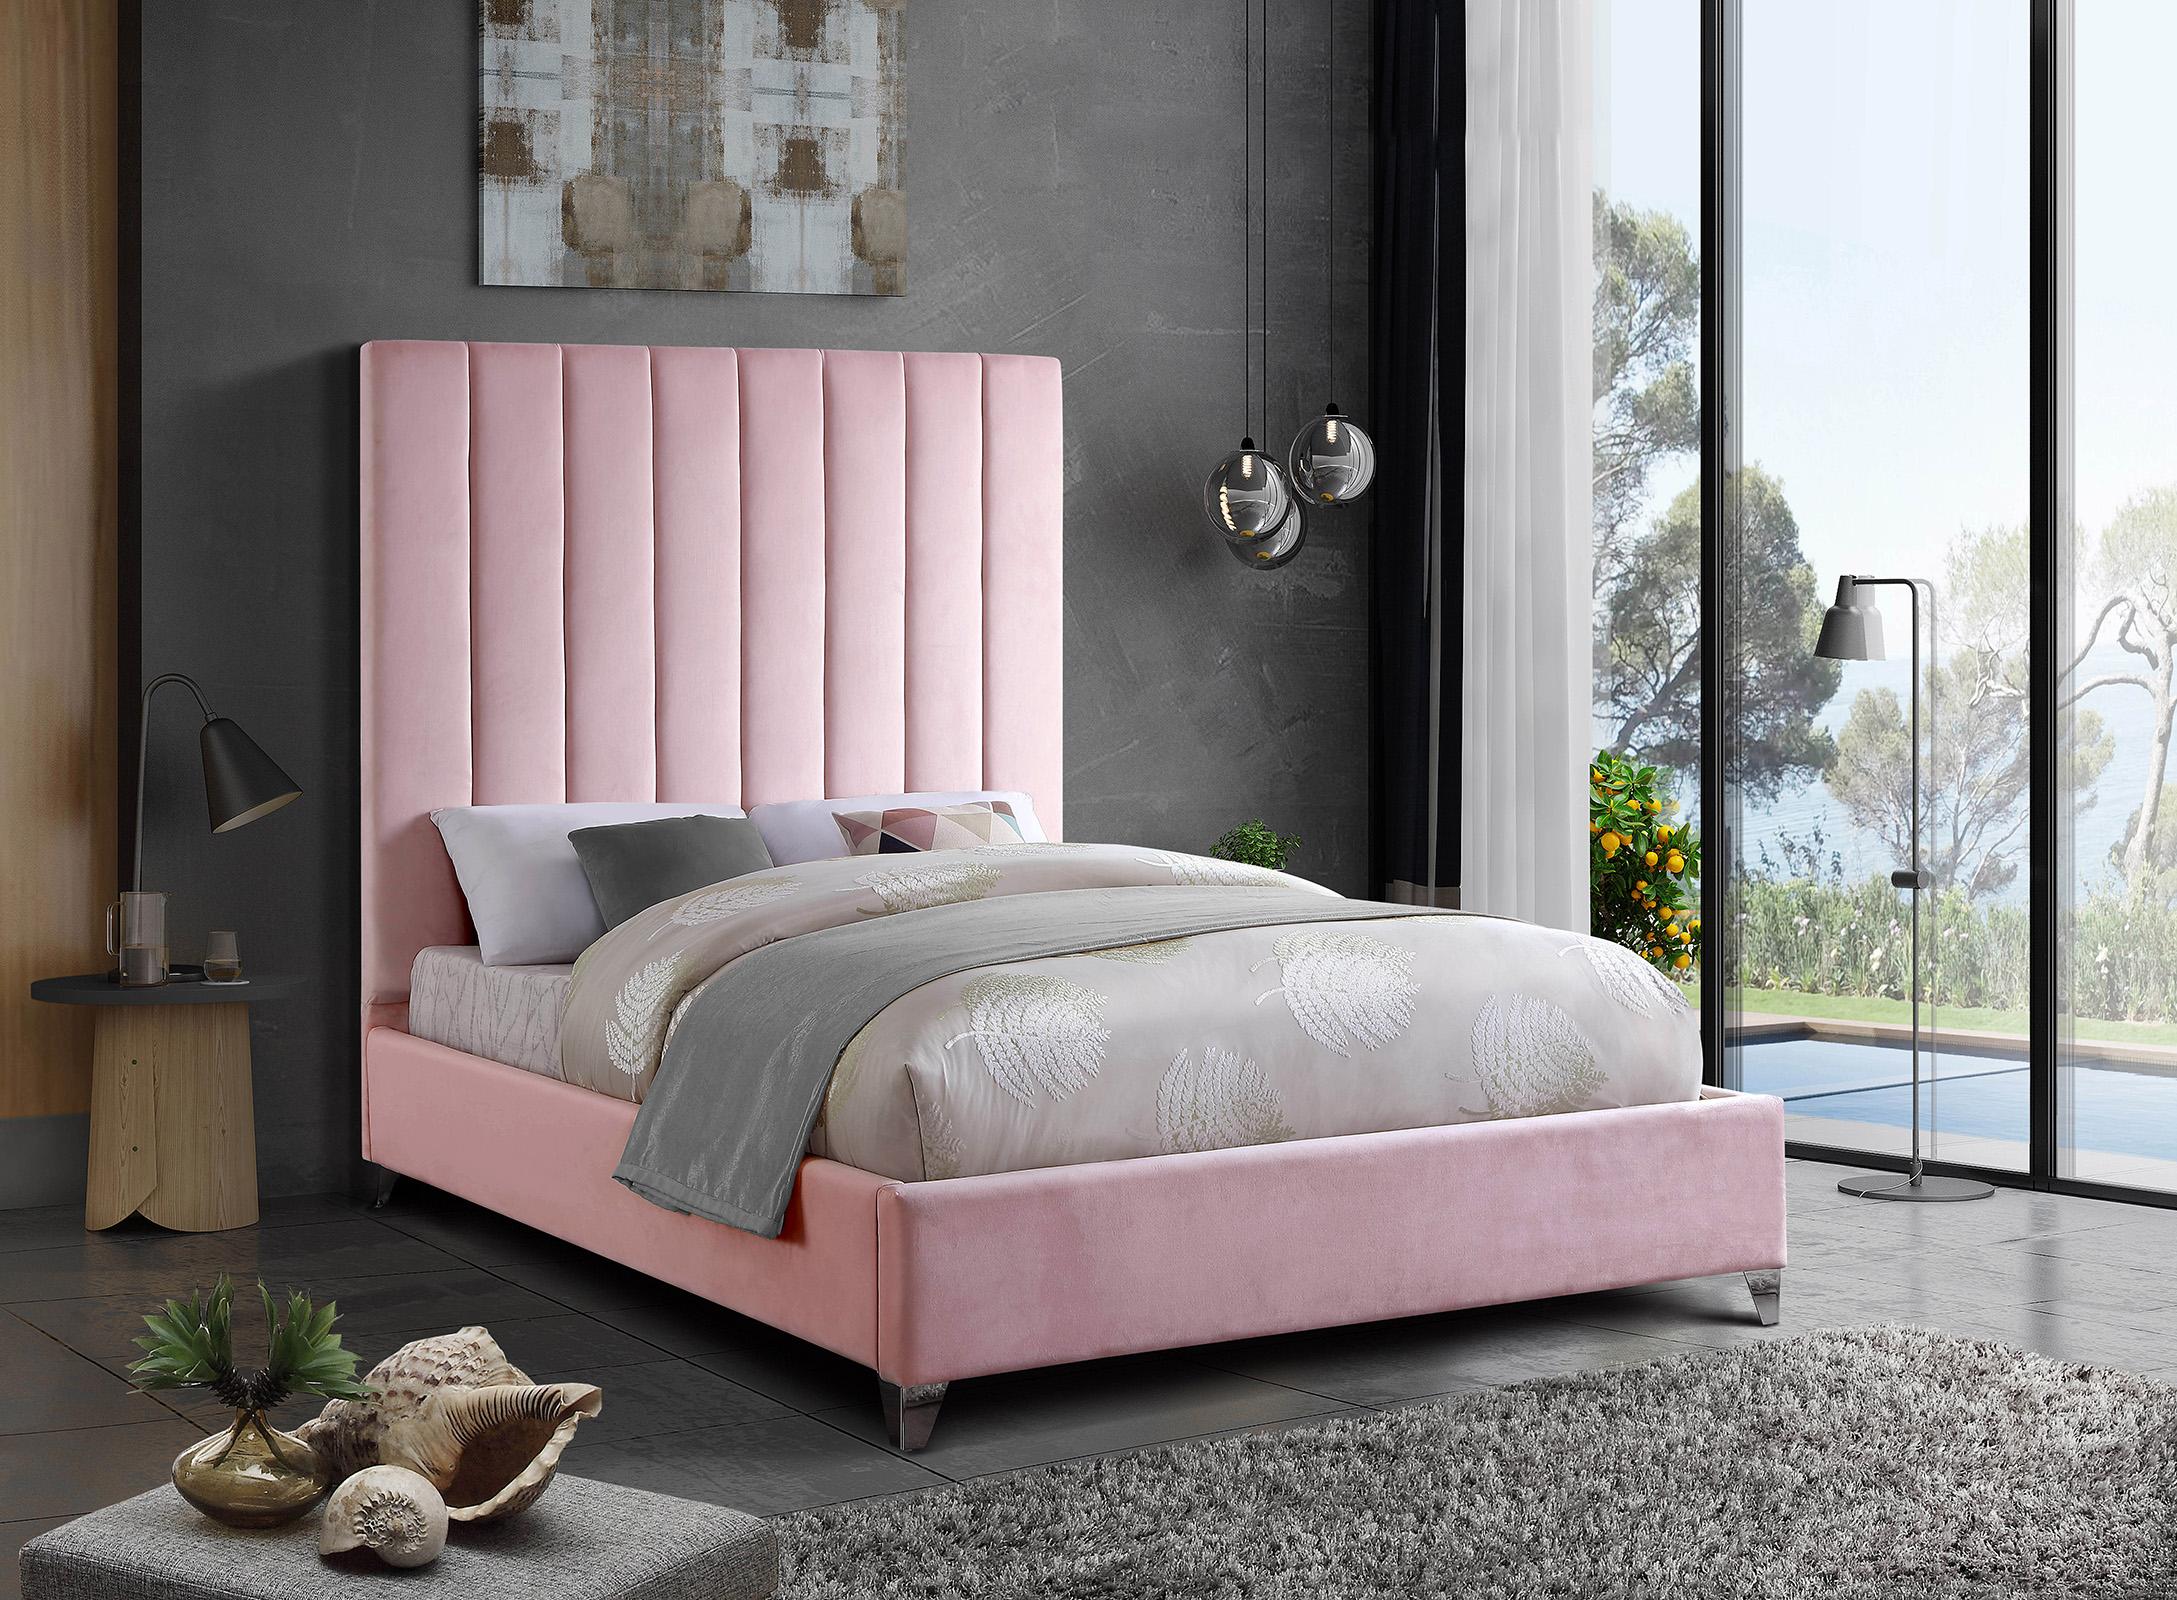 

    
ViaPink-K Meridian Furniture Platform Bed
